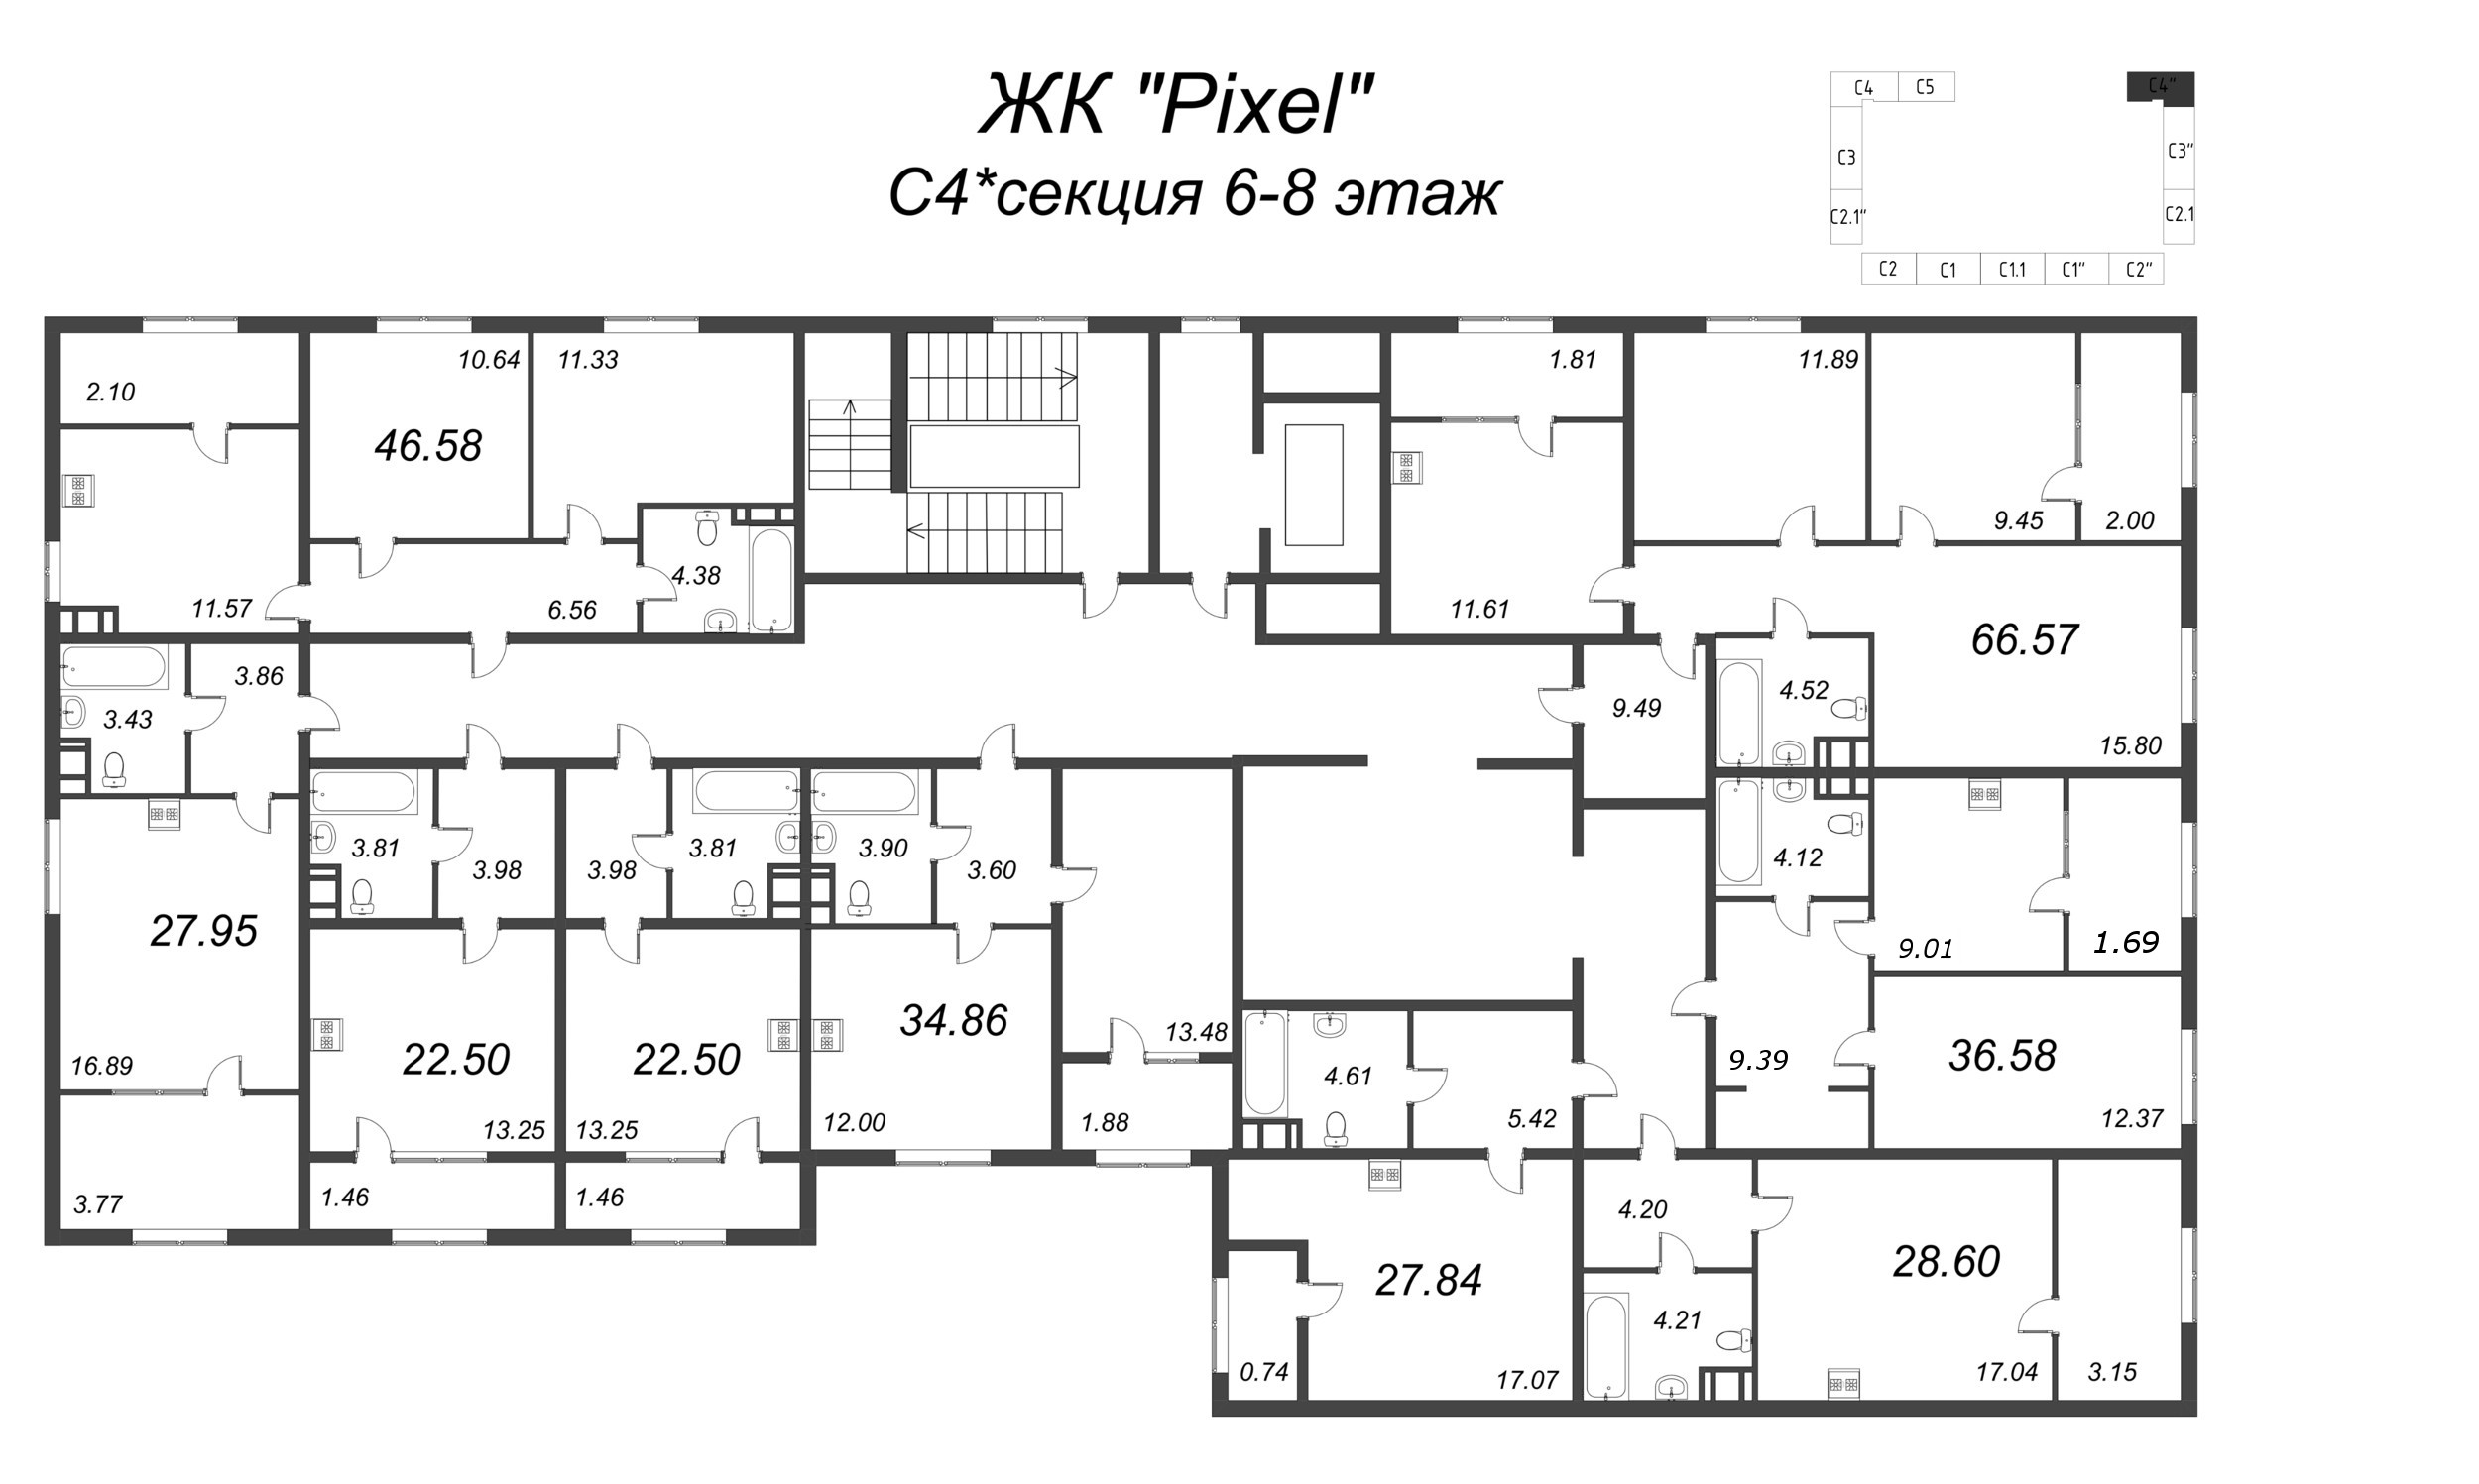 1-комнатная квартира, 37.97 м² - планировка этажа